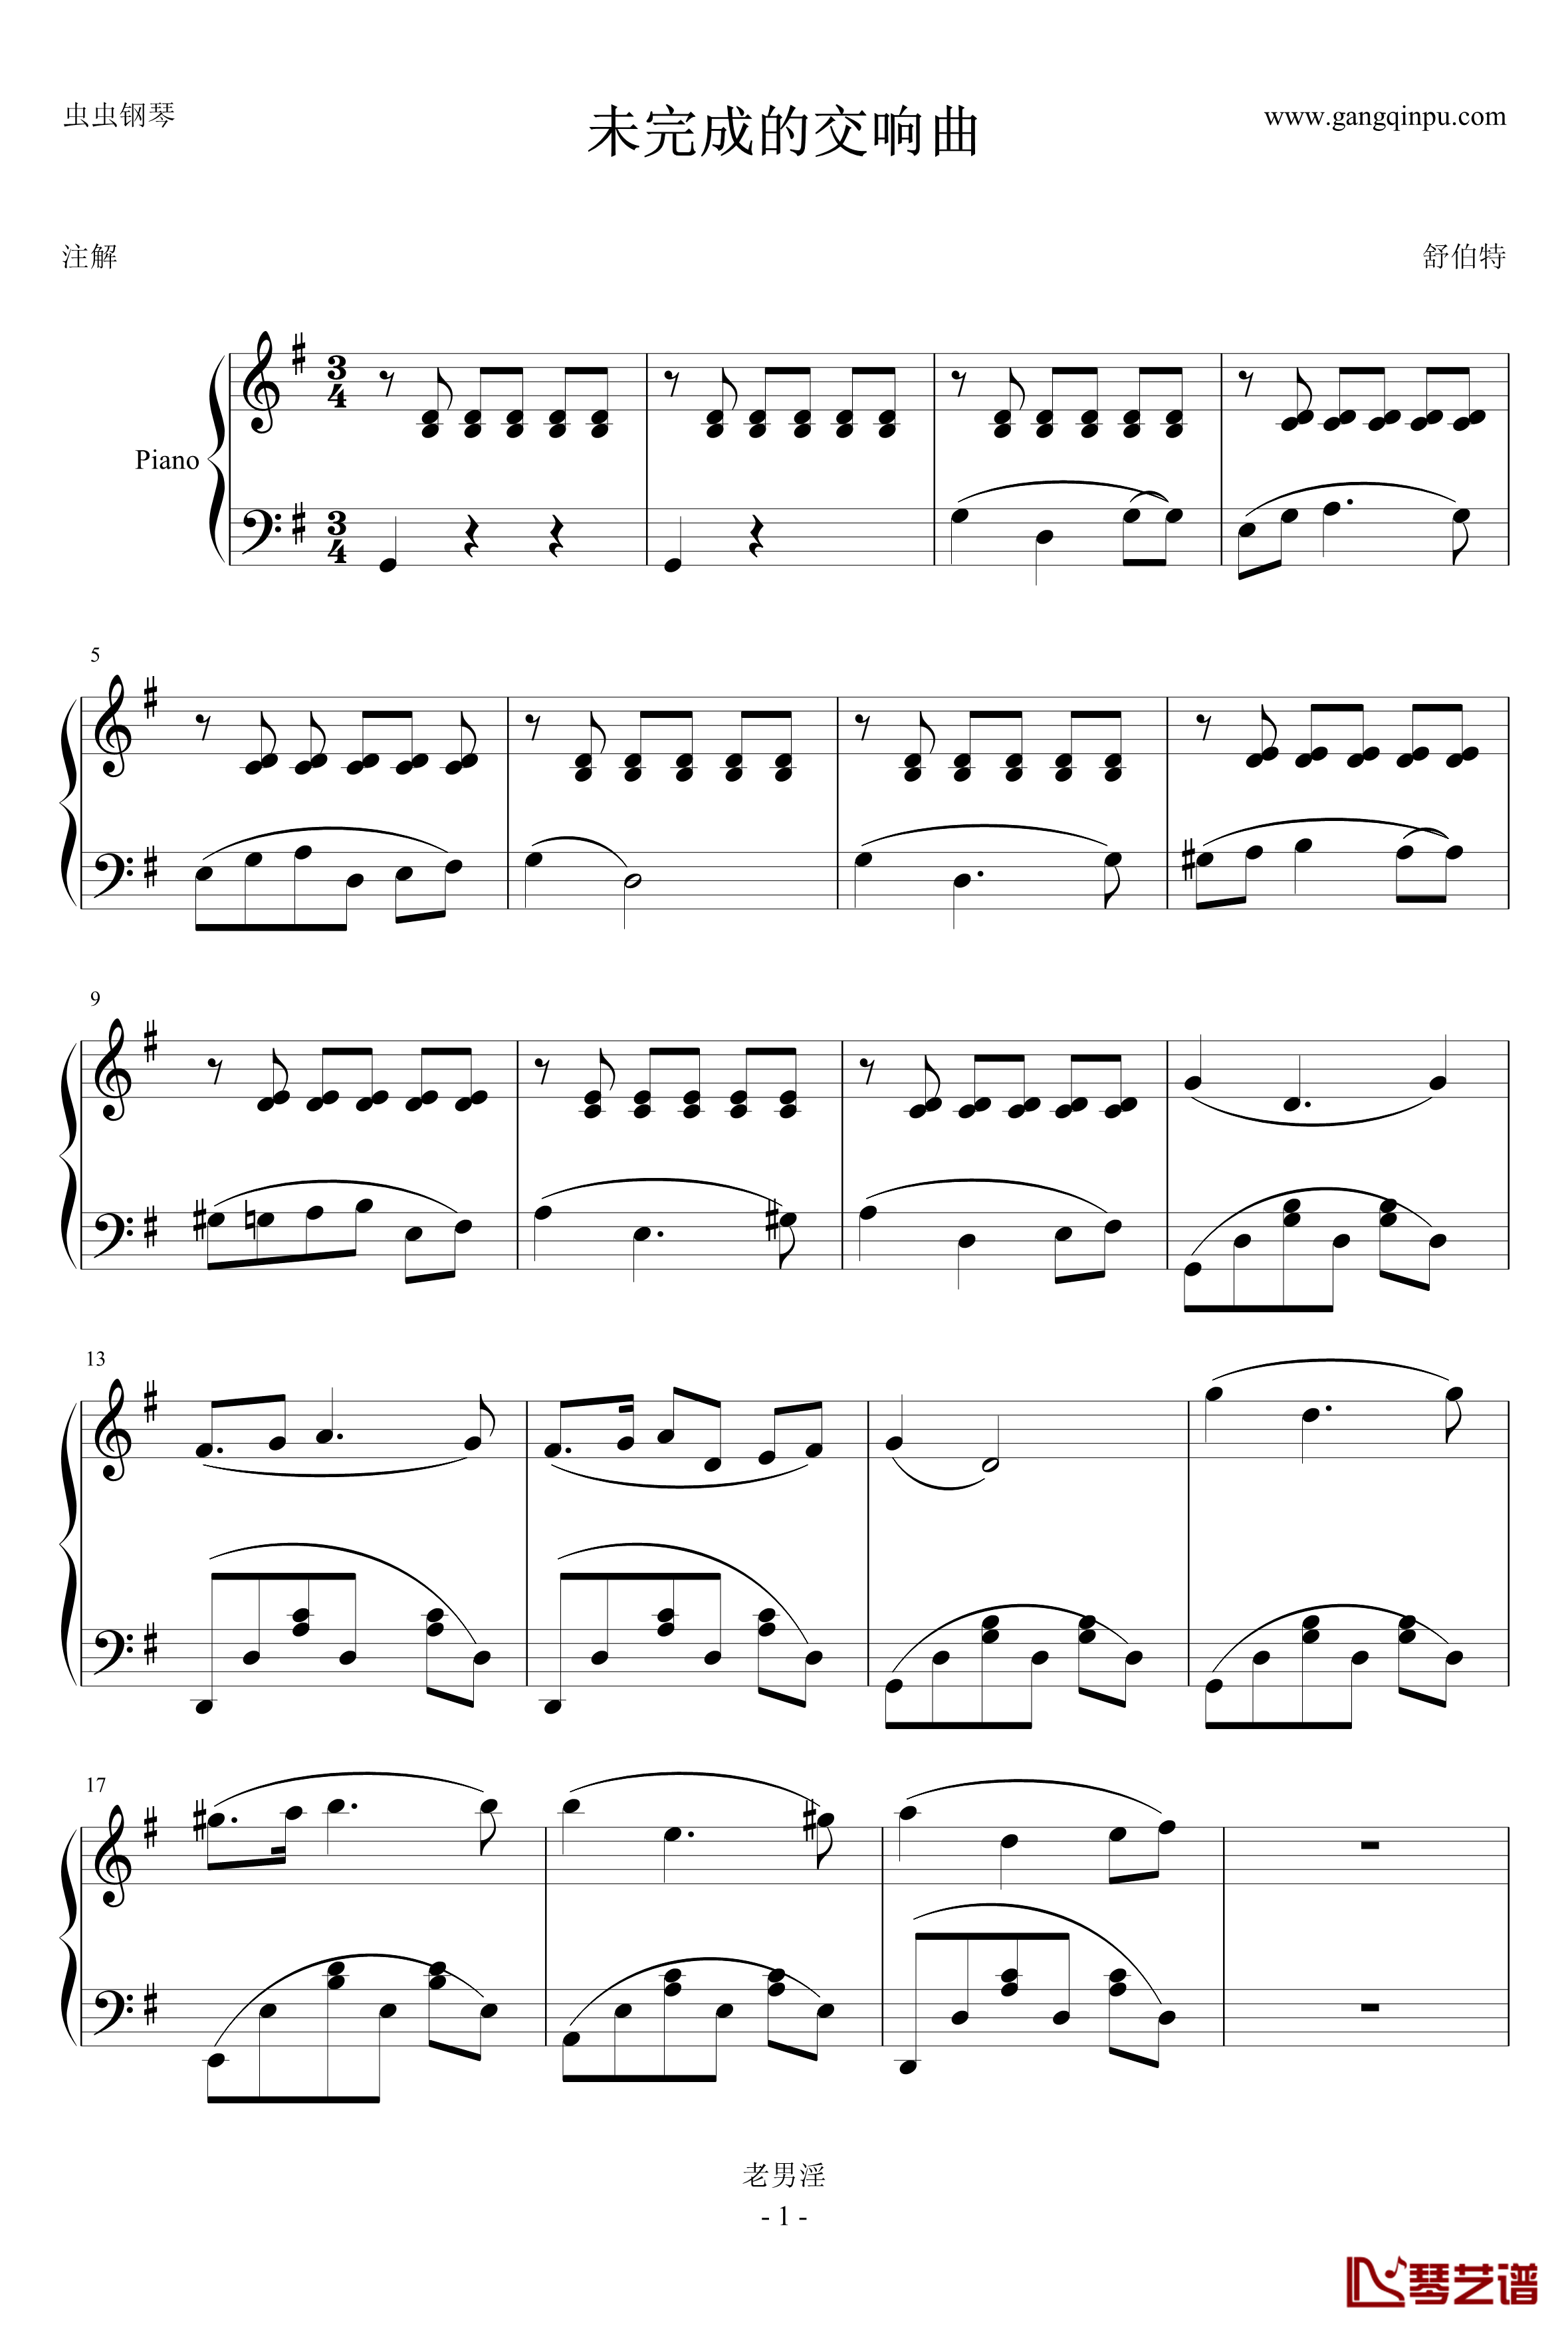 未完成的交响乐钢琴谱-舒伯特1